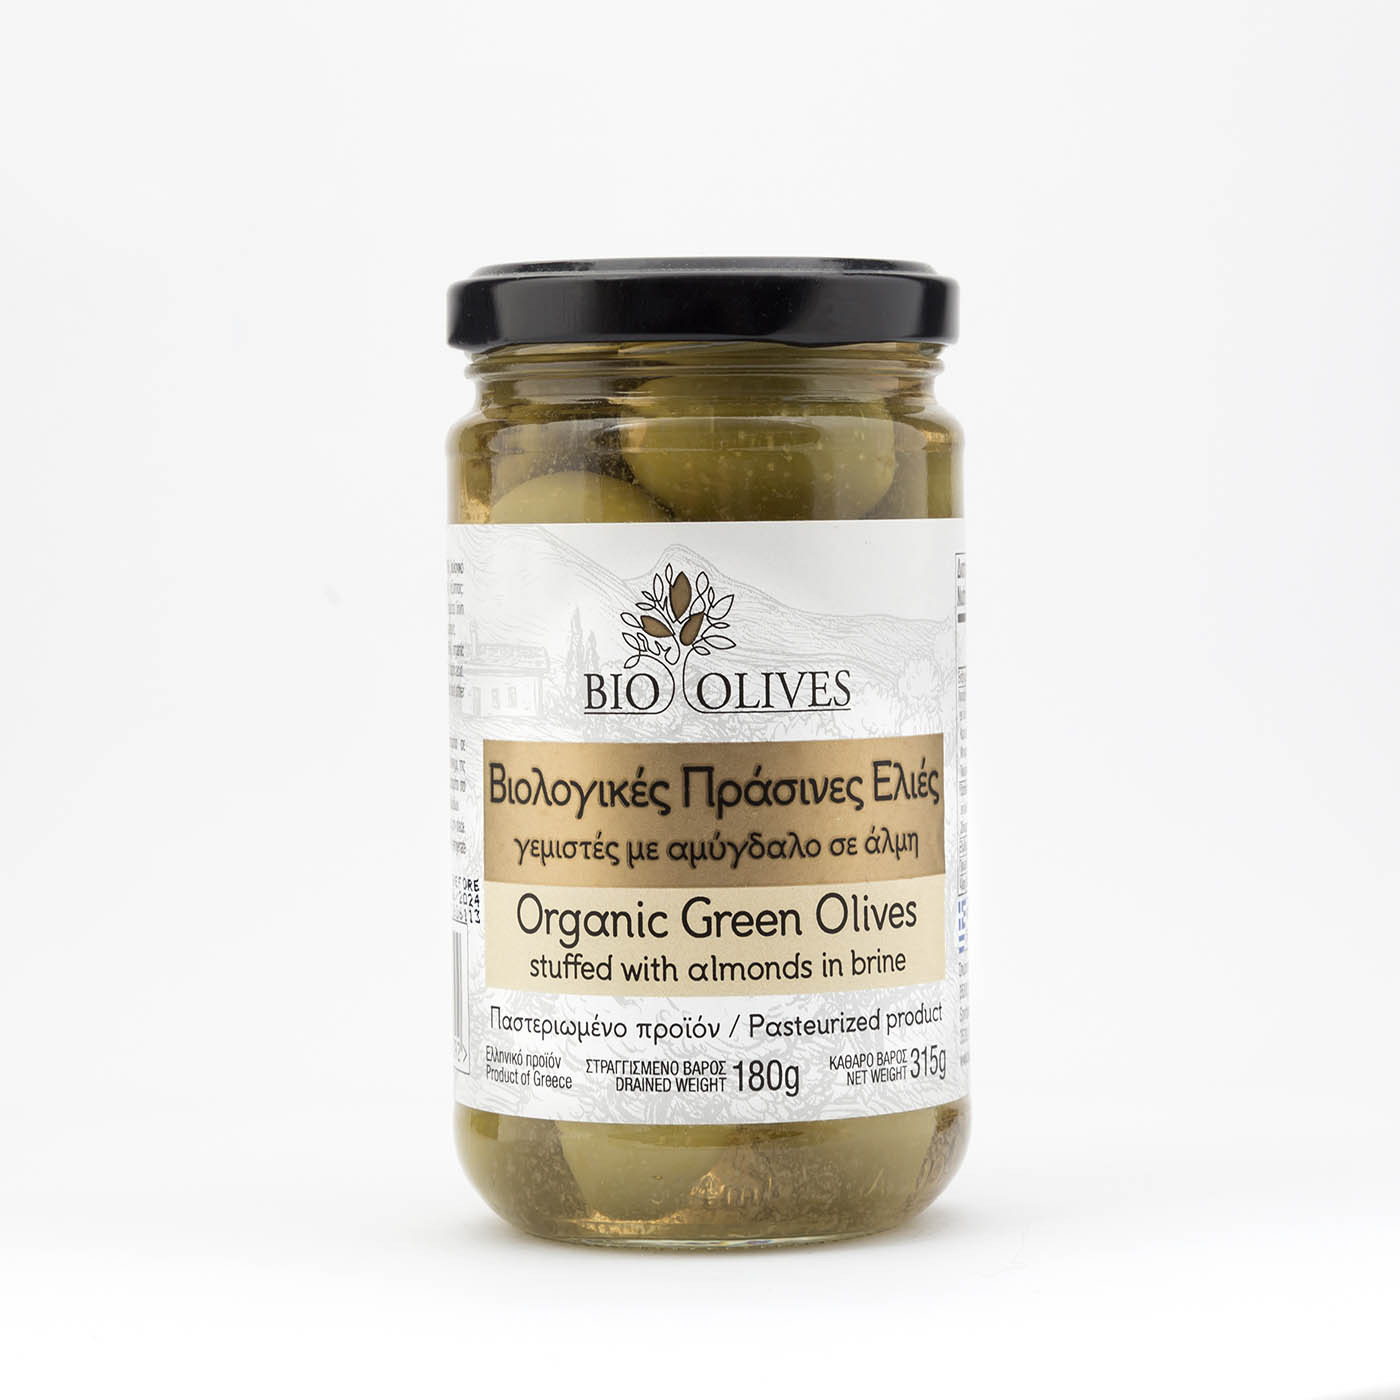 Βιολογικές πράσινες ελιές γεμιστές με αμύγδαλο σε άλμη "Bio olives" 180g